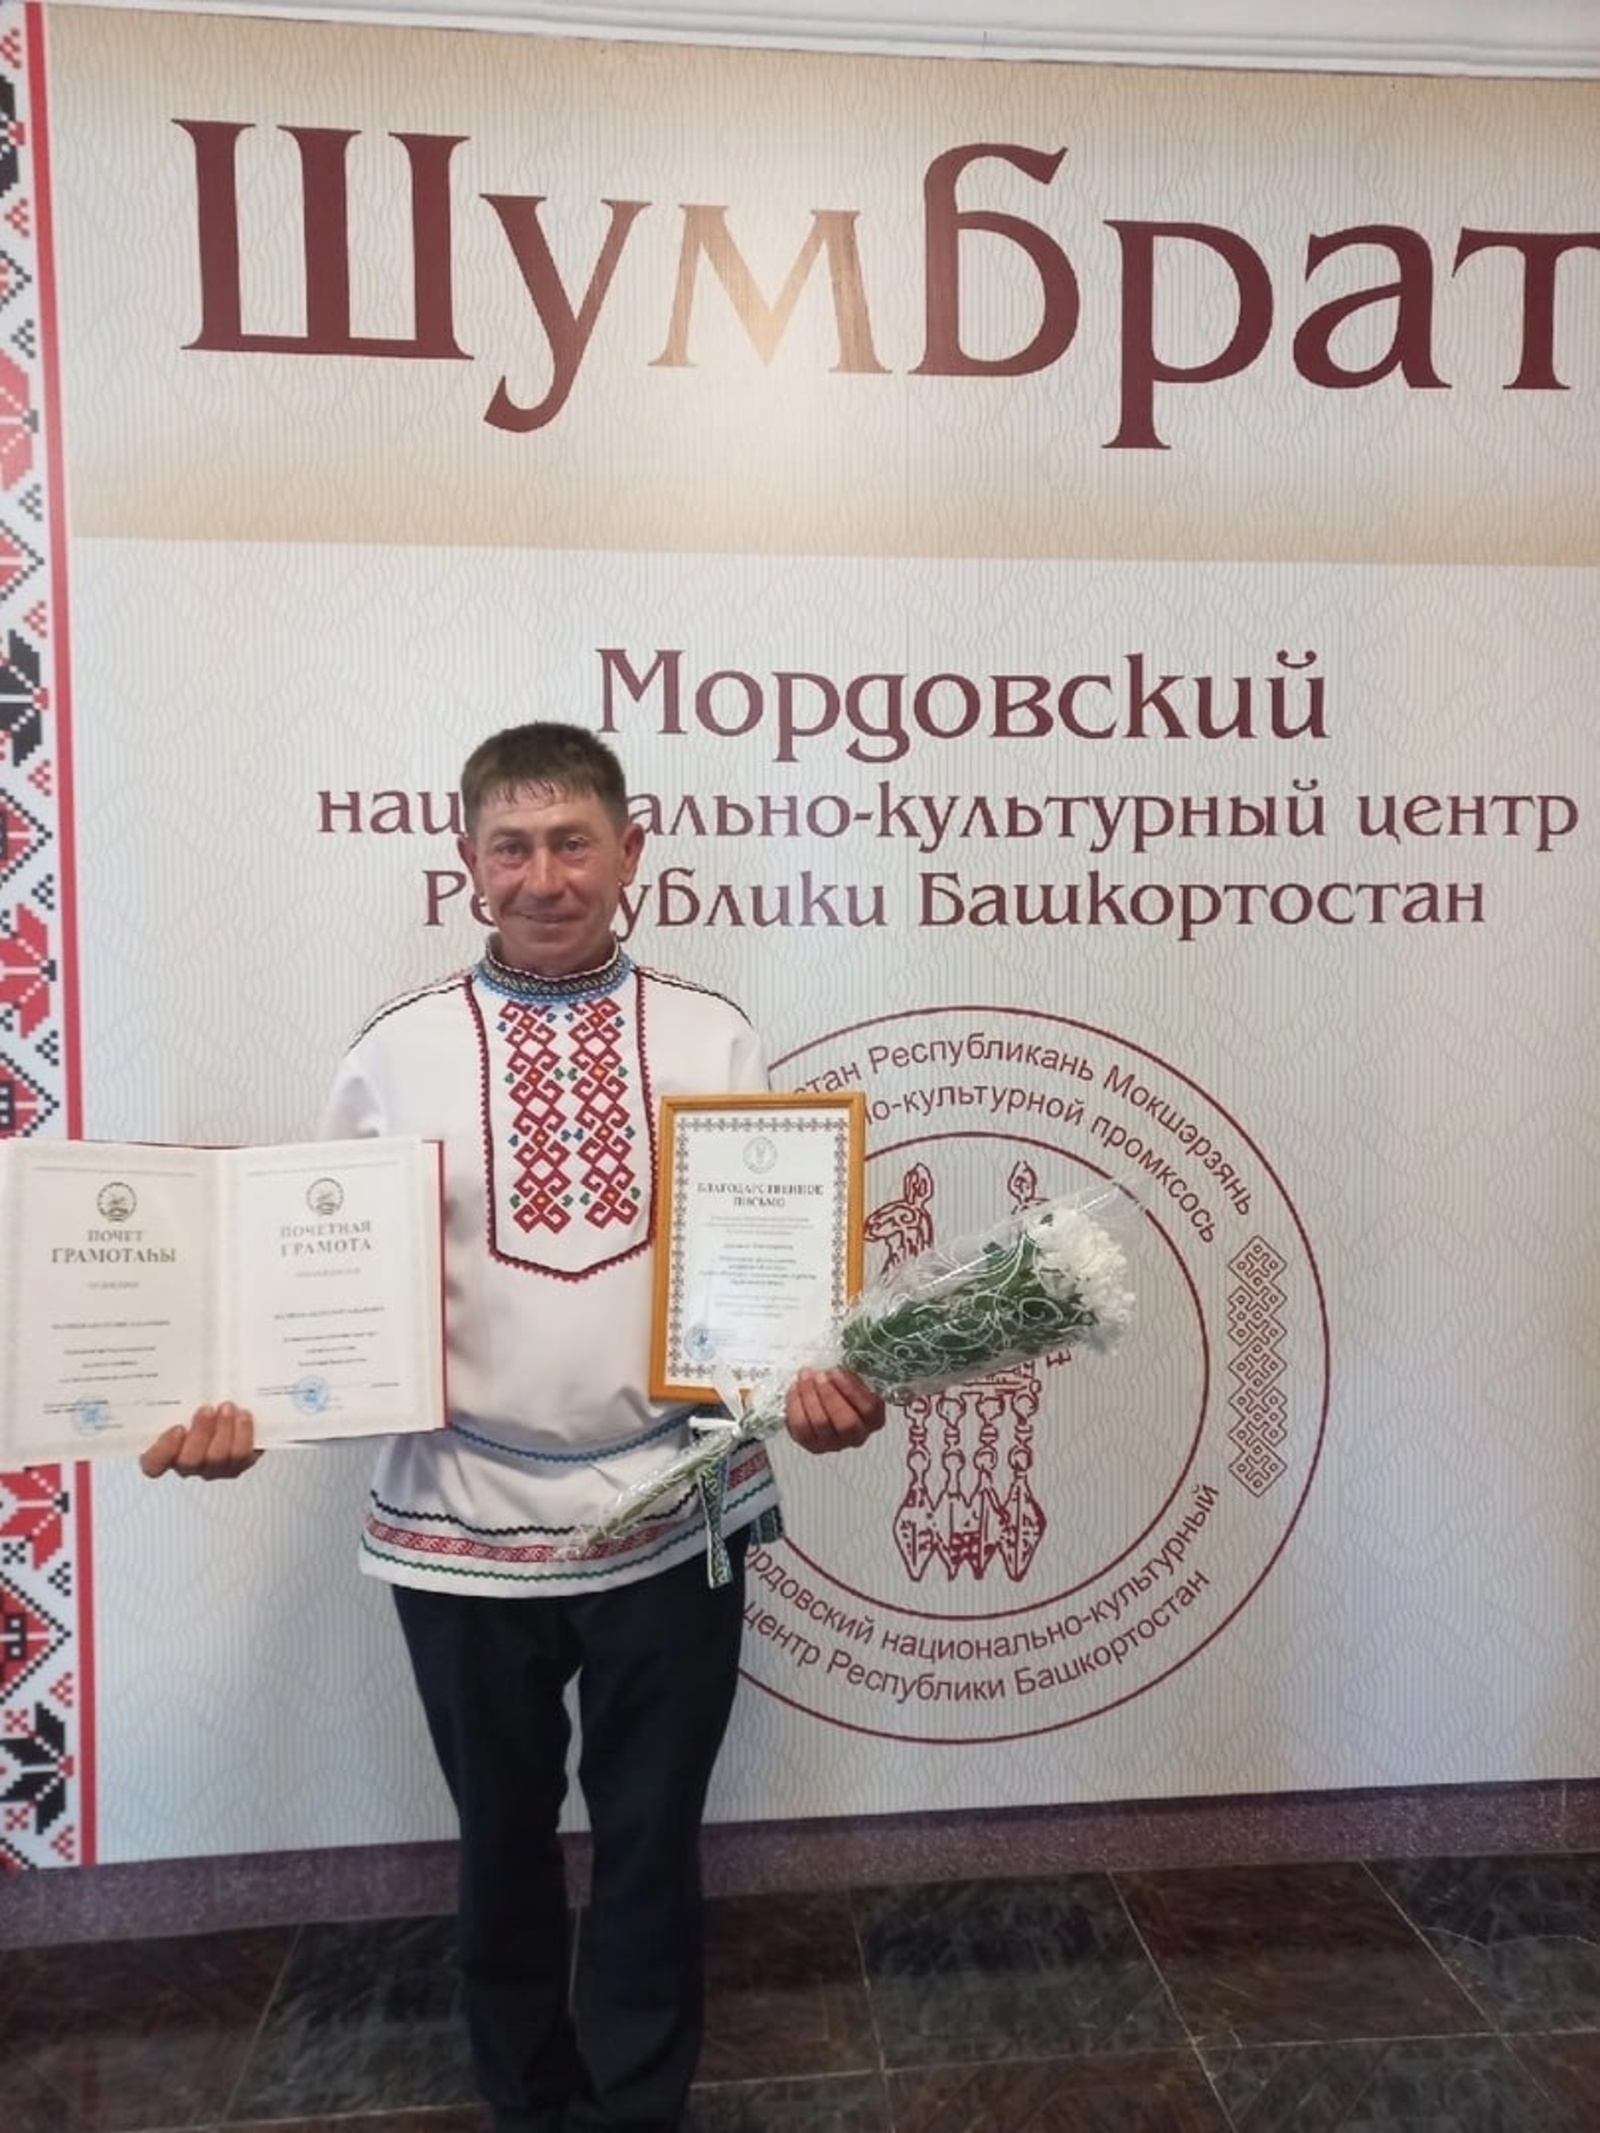 Награда за сохранение культурного наследия мордовского народа!